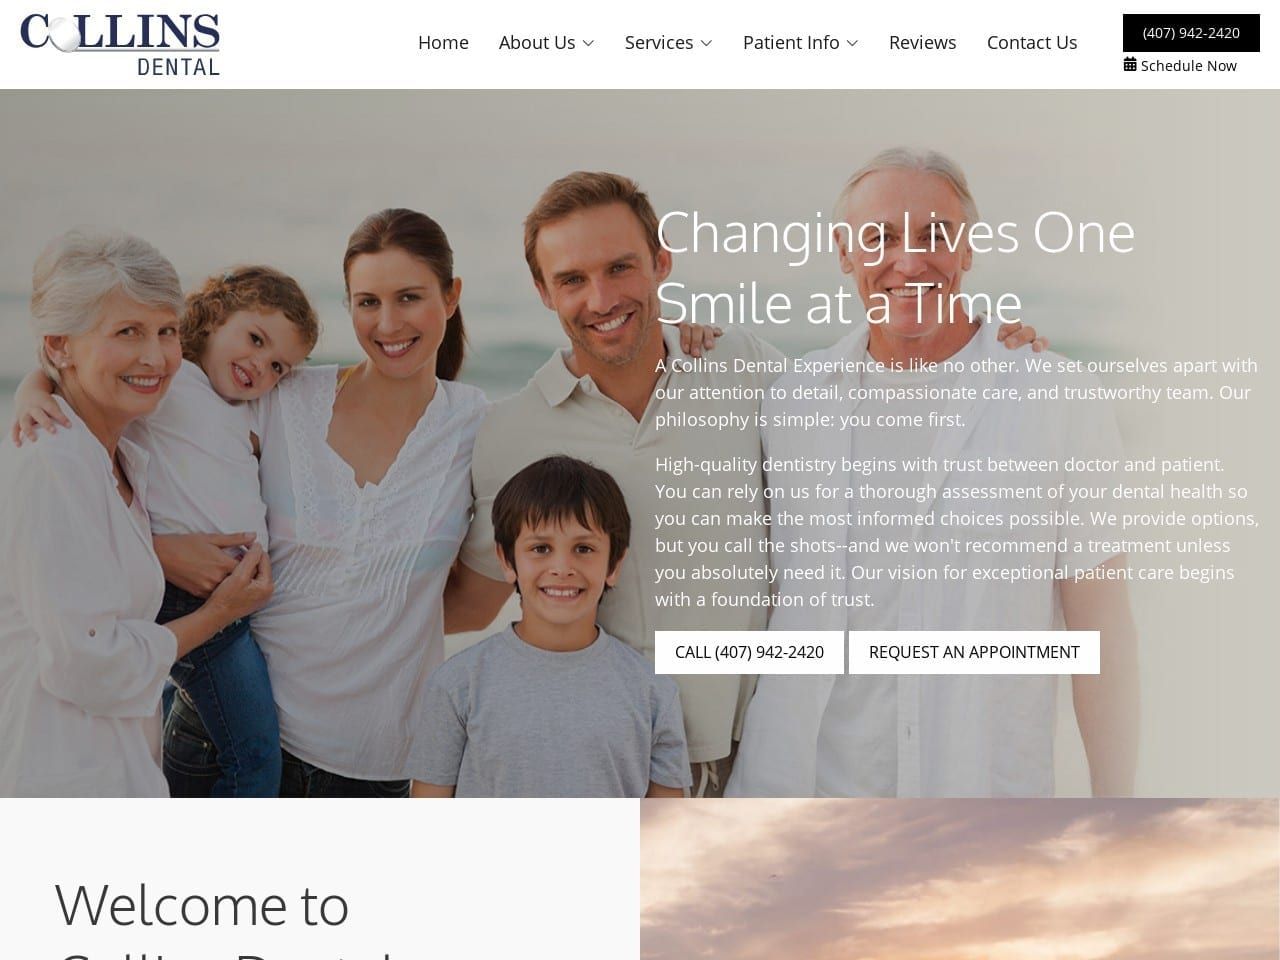 Collins Dental Care Website Screenshot from collinsdentalcare.com